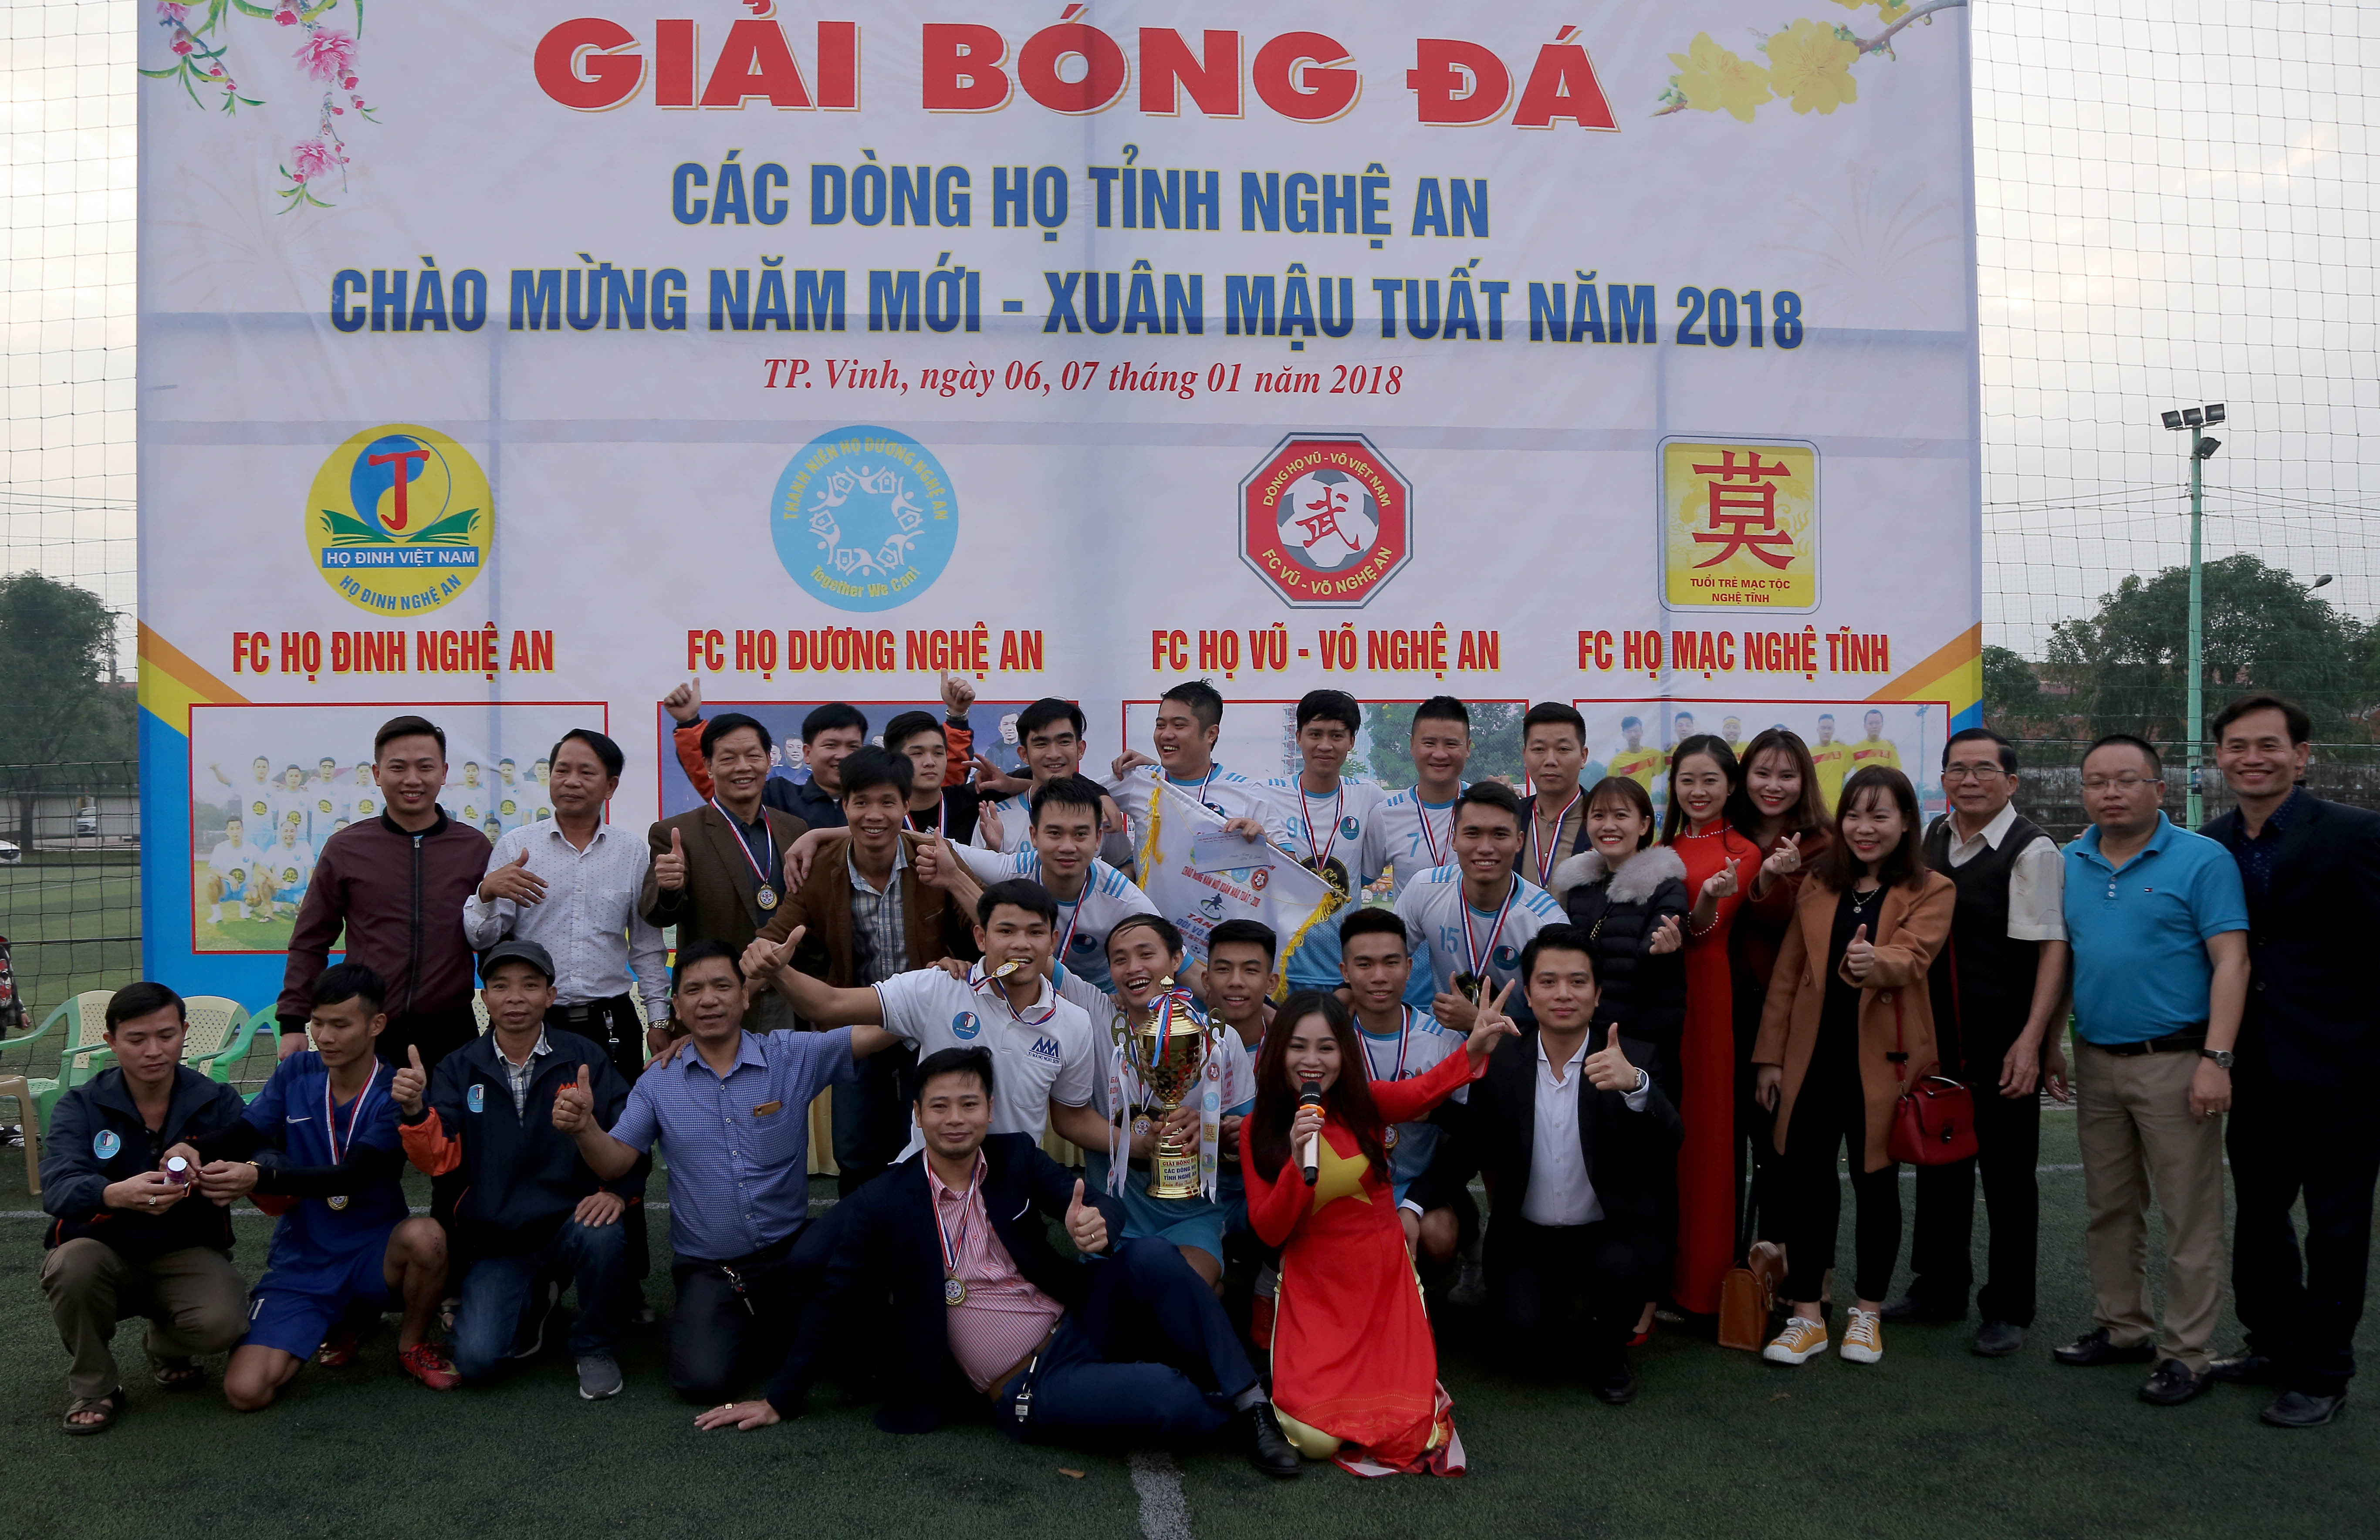 Đội FC họ Đinh Nghệ An vui mừng đón nhận cúp vô địch. Ảnh: Hoàng Hảo